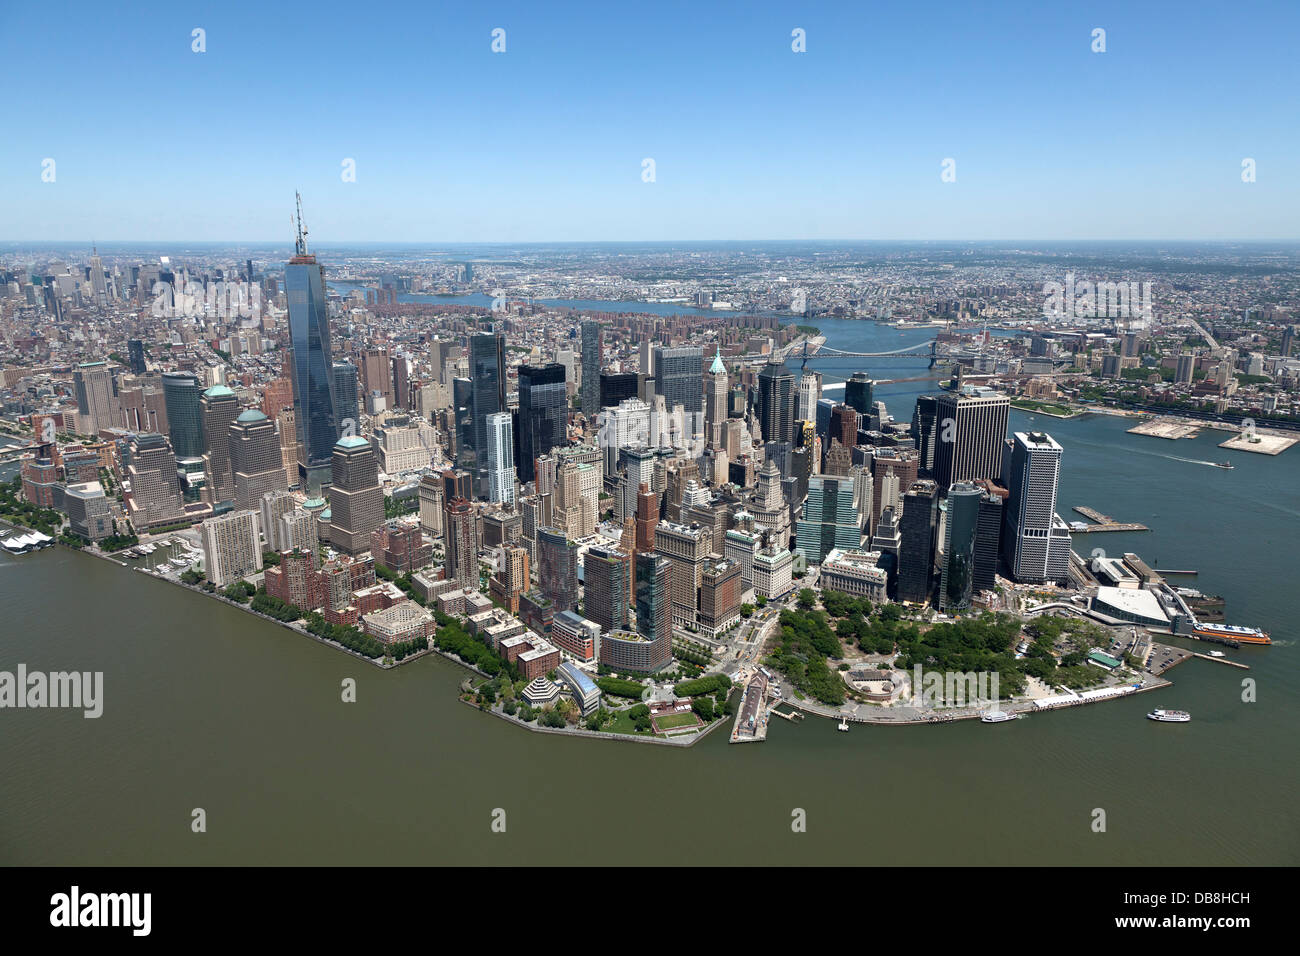 Vue aérienne de l'île de Manhattan, New York City Banque D'Images